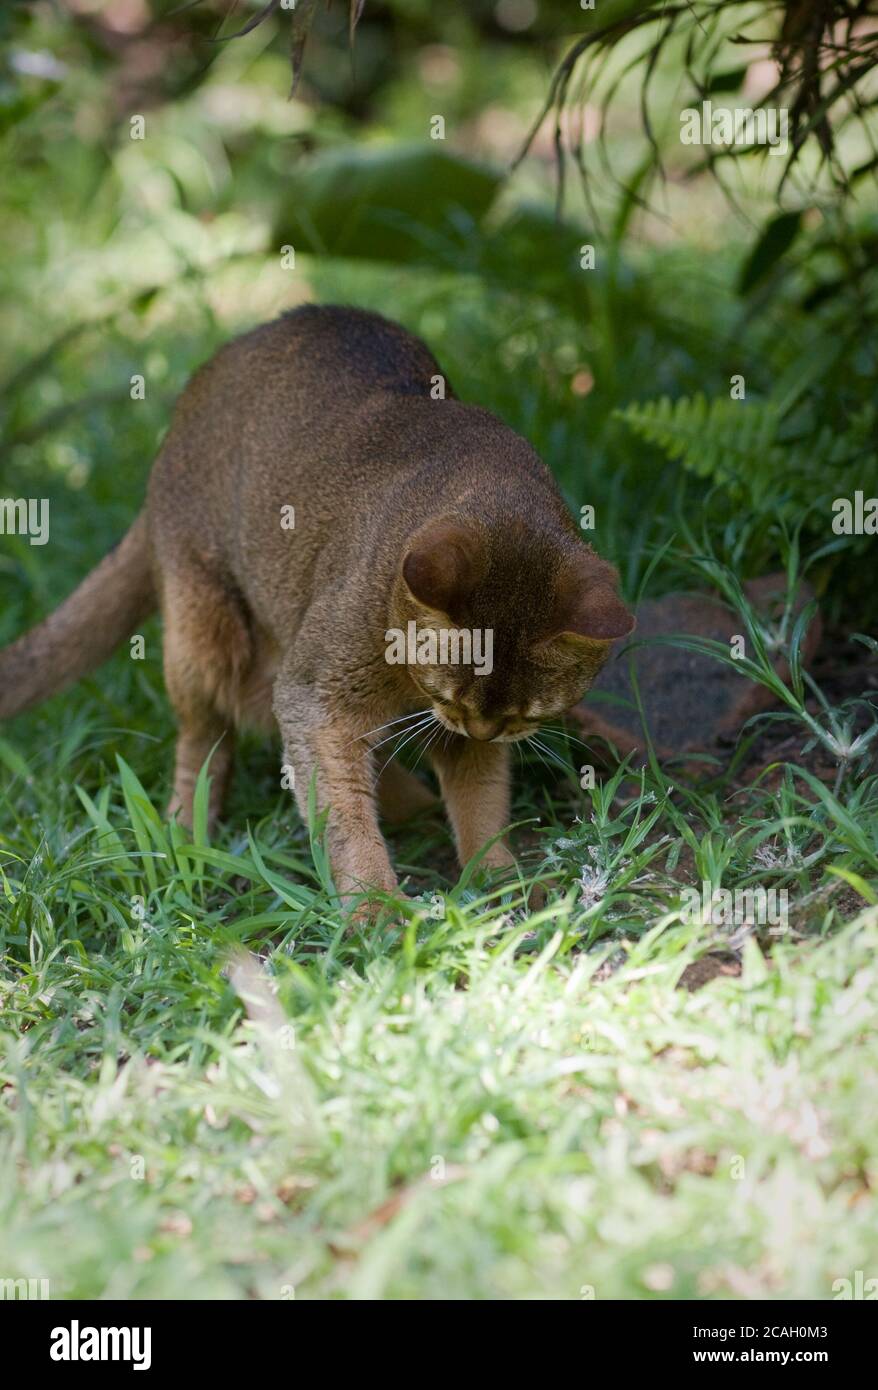 A ruddy Abyssinian cat hunts a lizard in a garden Stock Photo